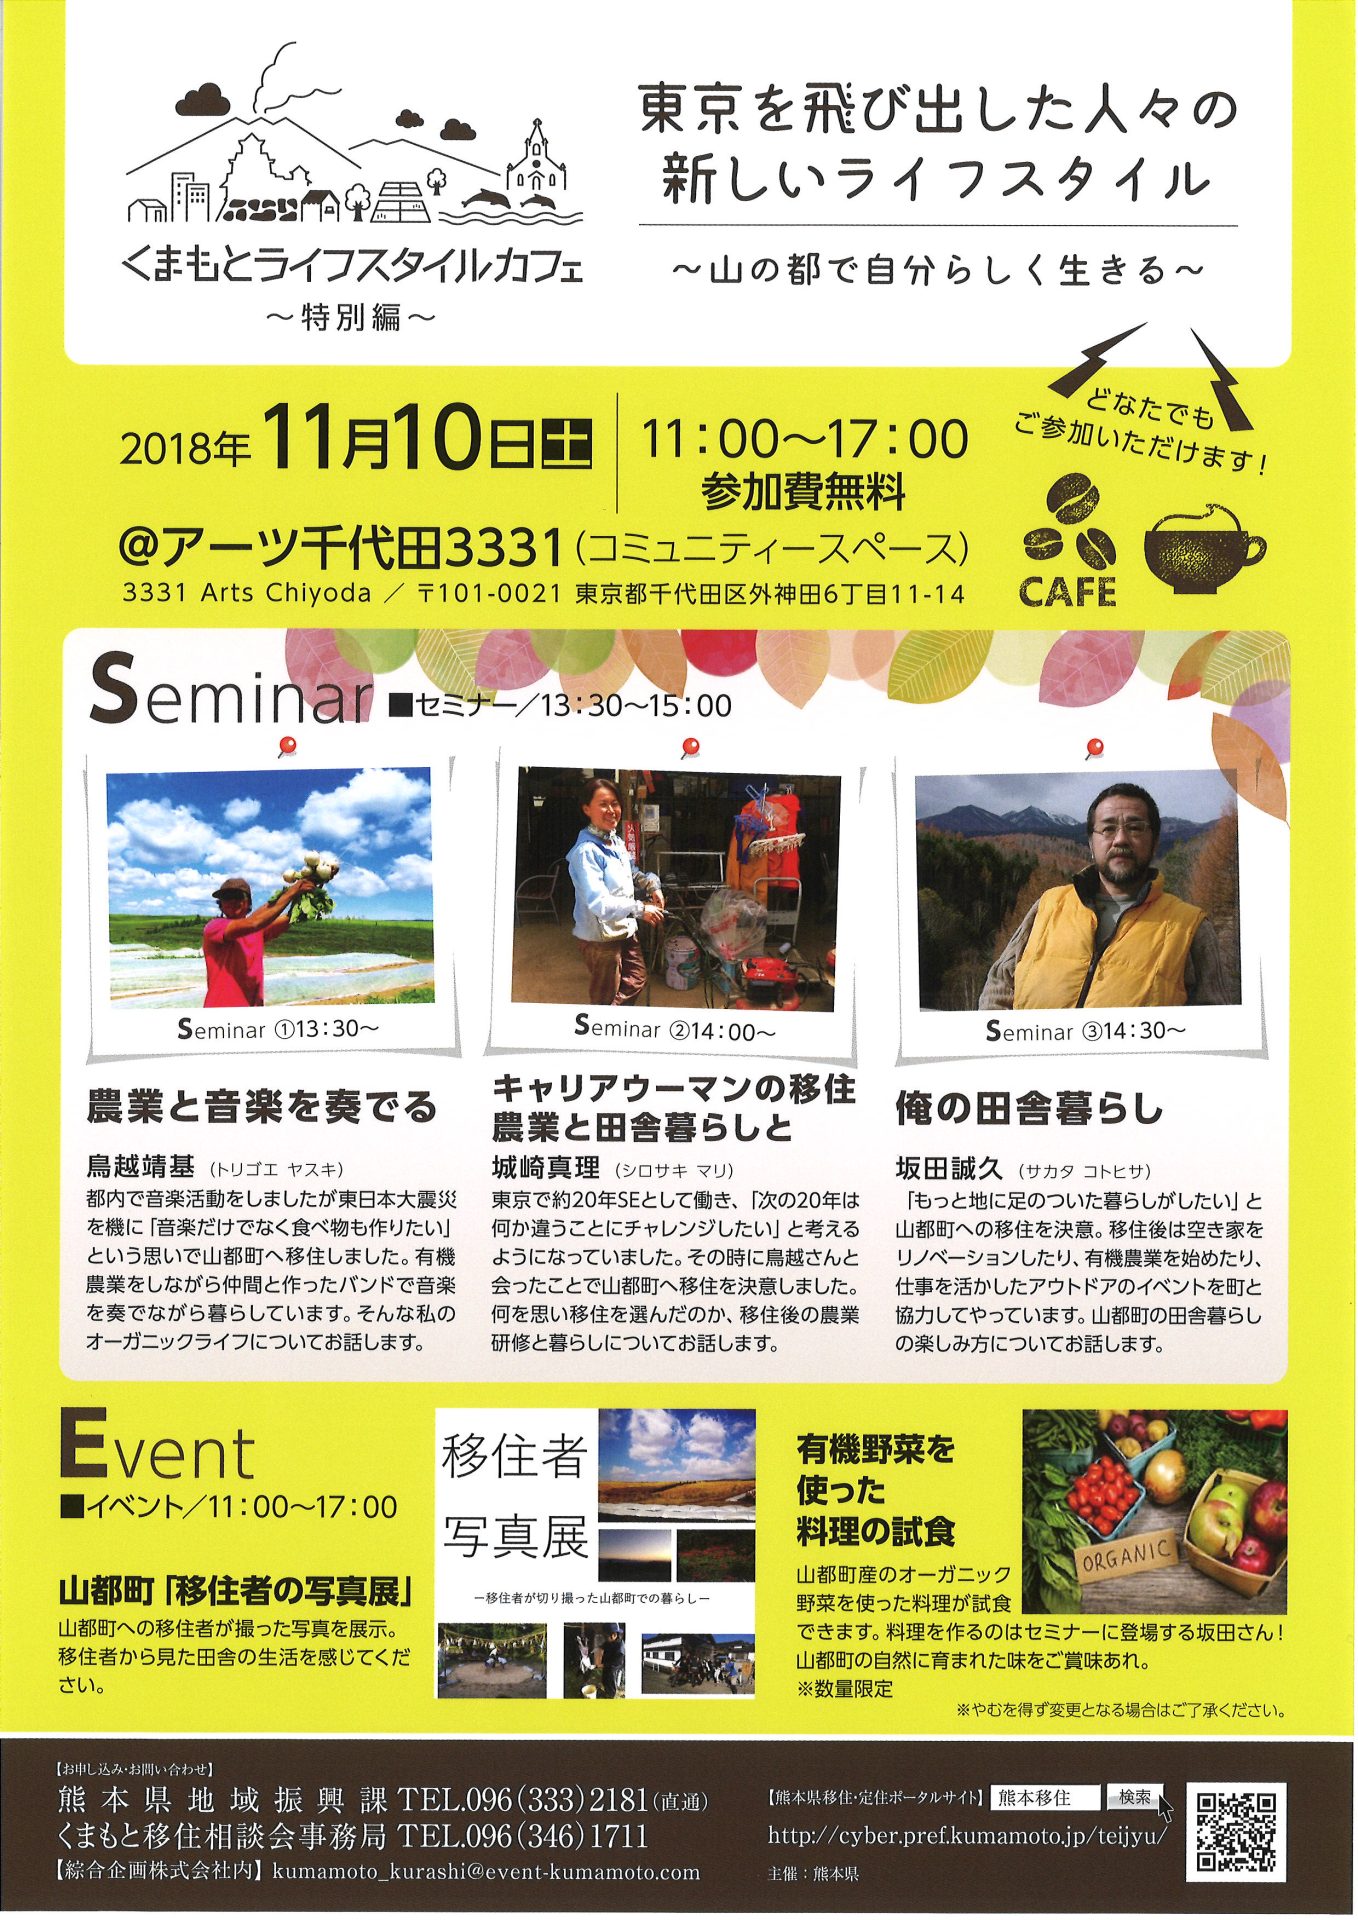 くまもとライフスタイルカフェ -特別編- 東京を飛び出した人々の新しいライフスタイル | 移住関連イベント情報